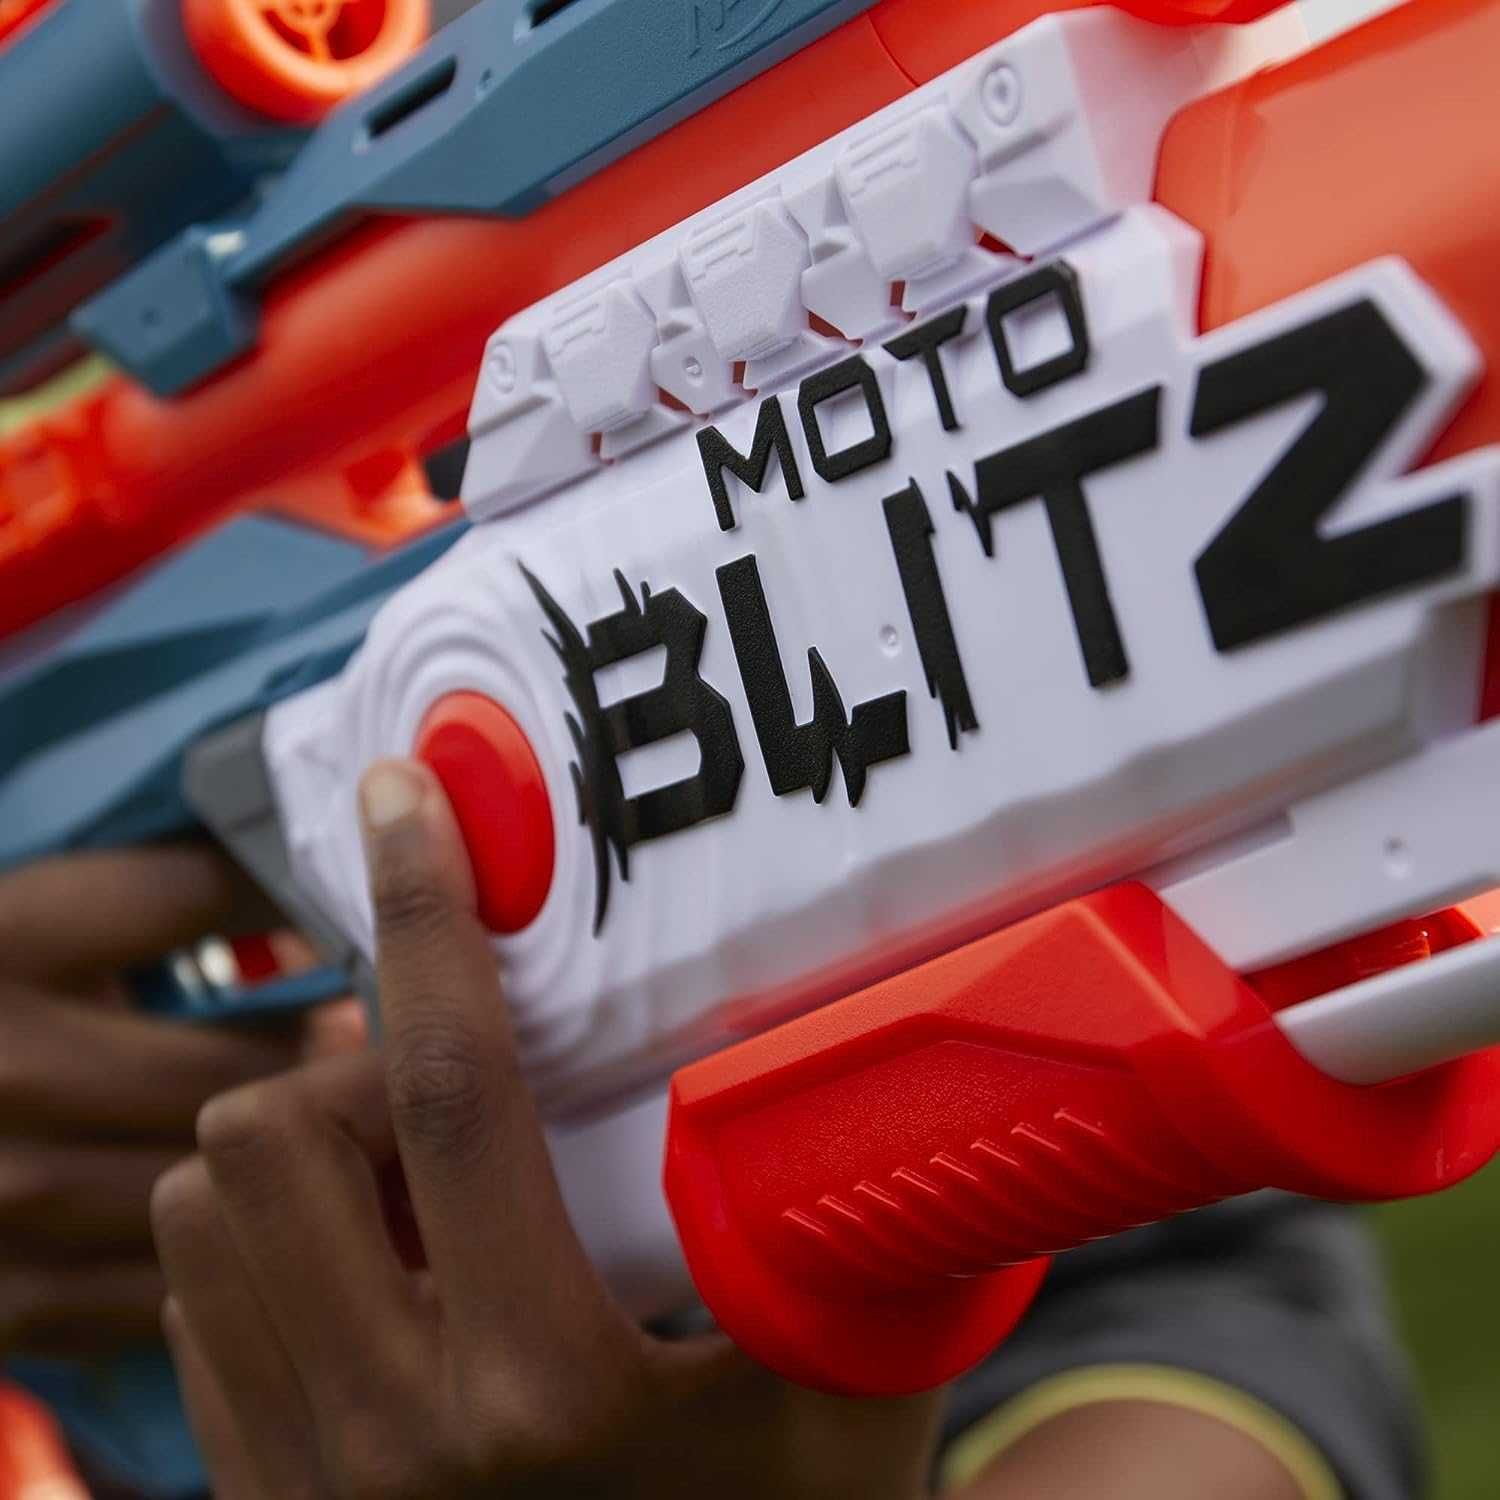 Бластер Нерф Элит Мотоблиц NERF Elite 2.0 Motoblitz Blaster, Hasbro